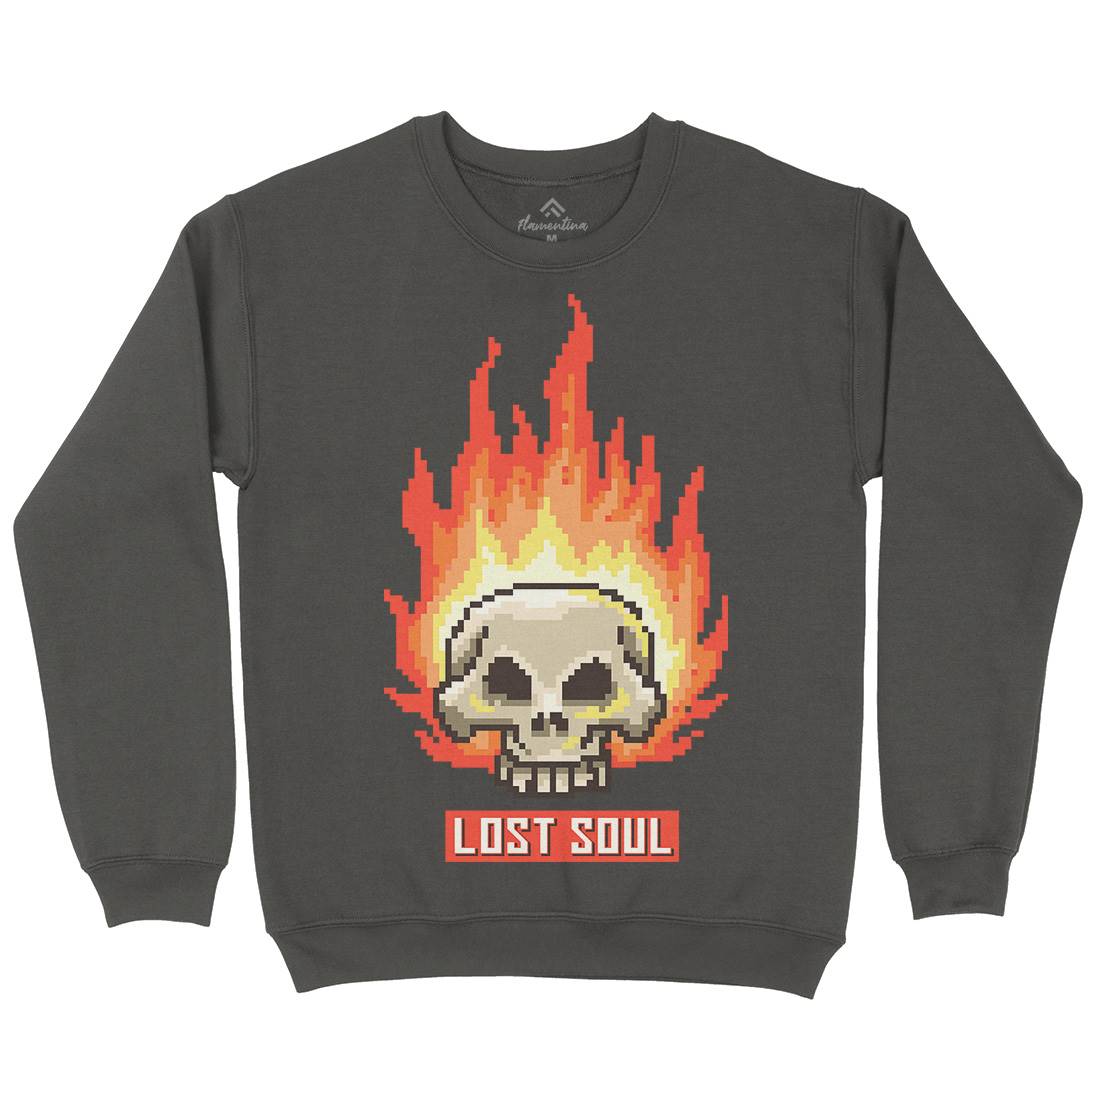 Burning Skull Lost Soul Kids Crew Neck Sweatshirt Retro B889